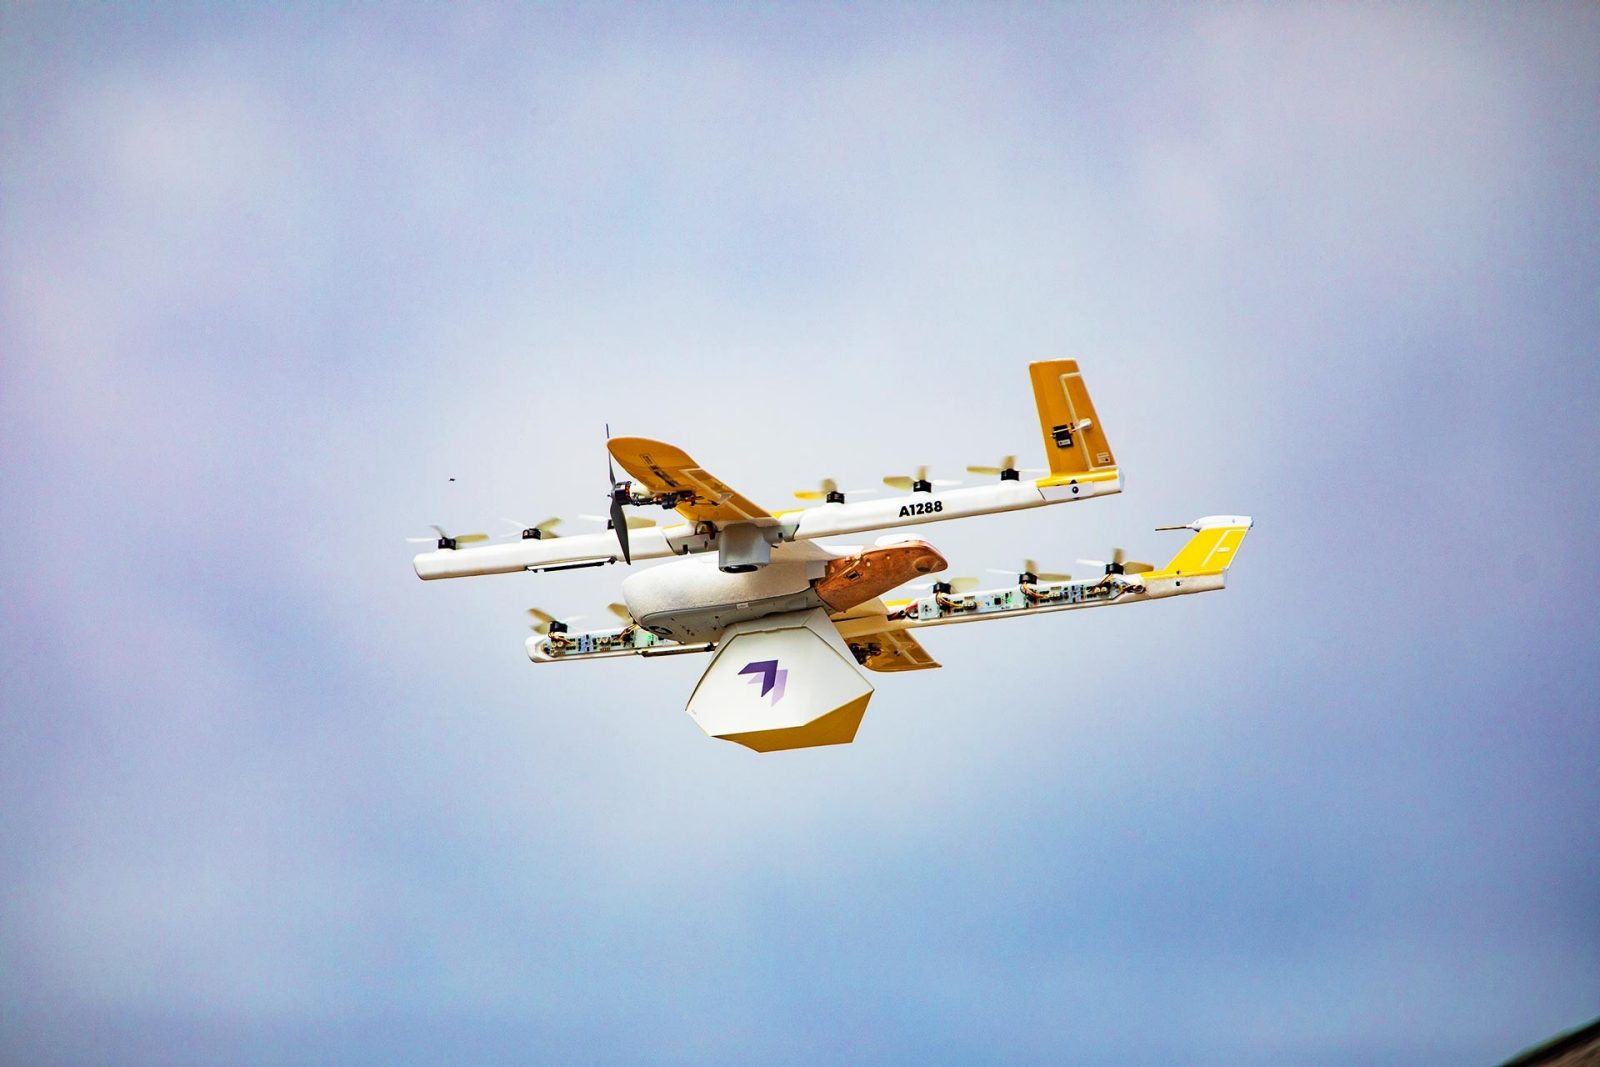 Wing drone in flight